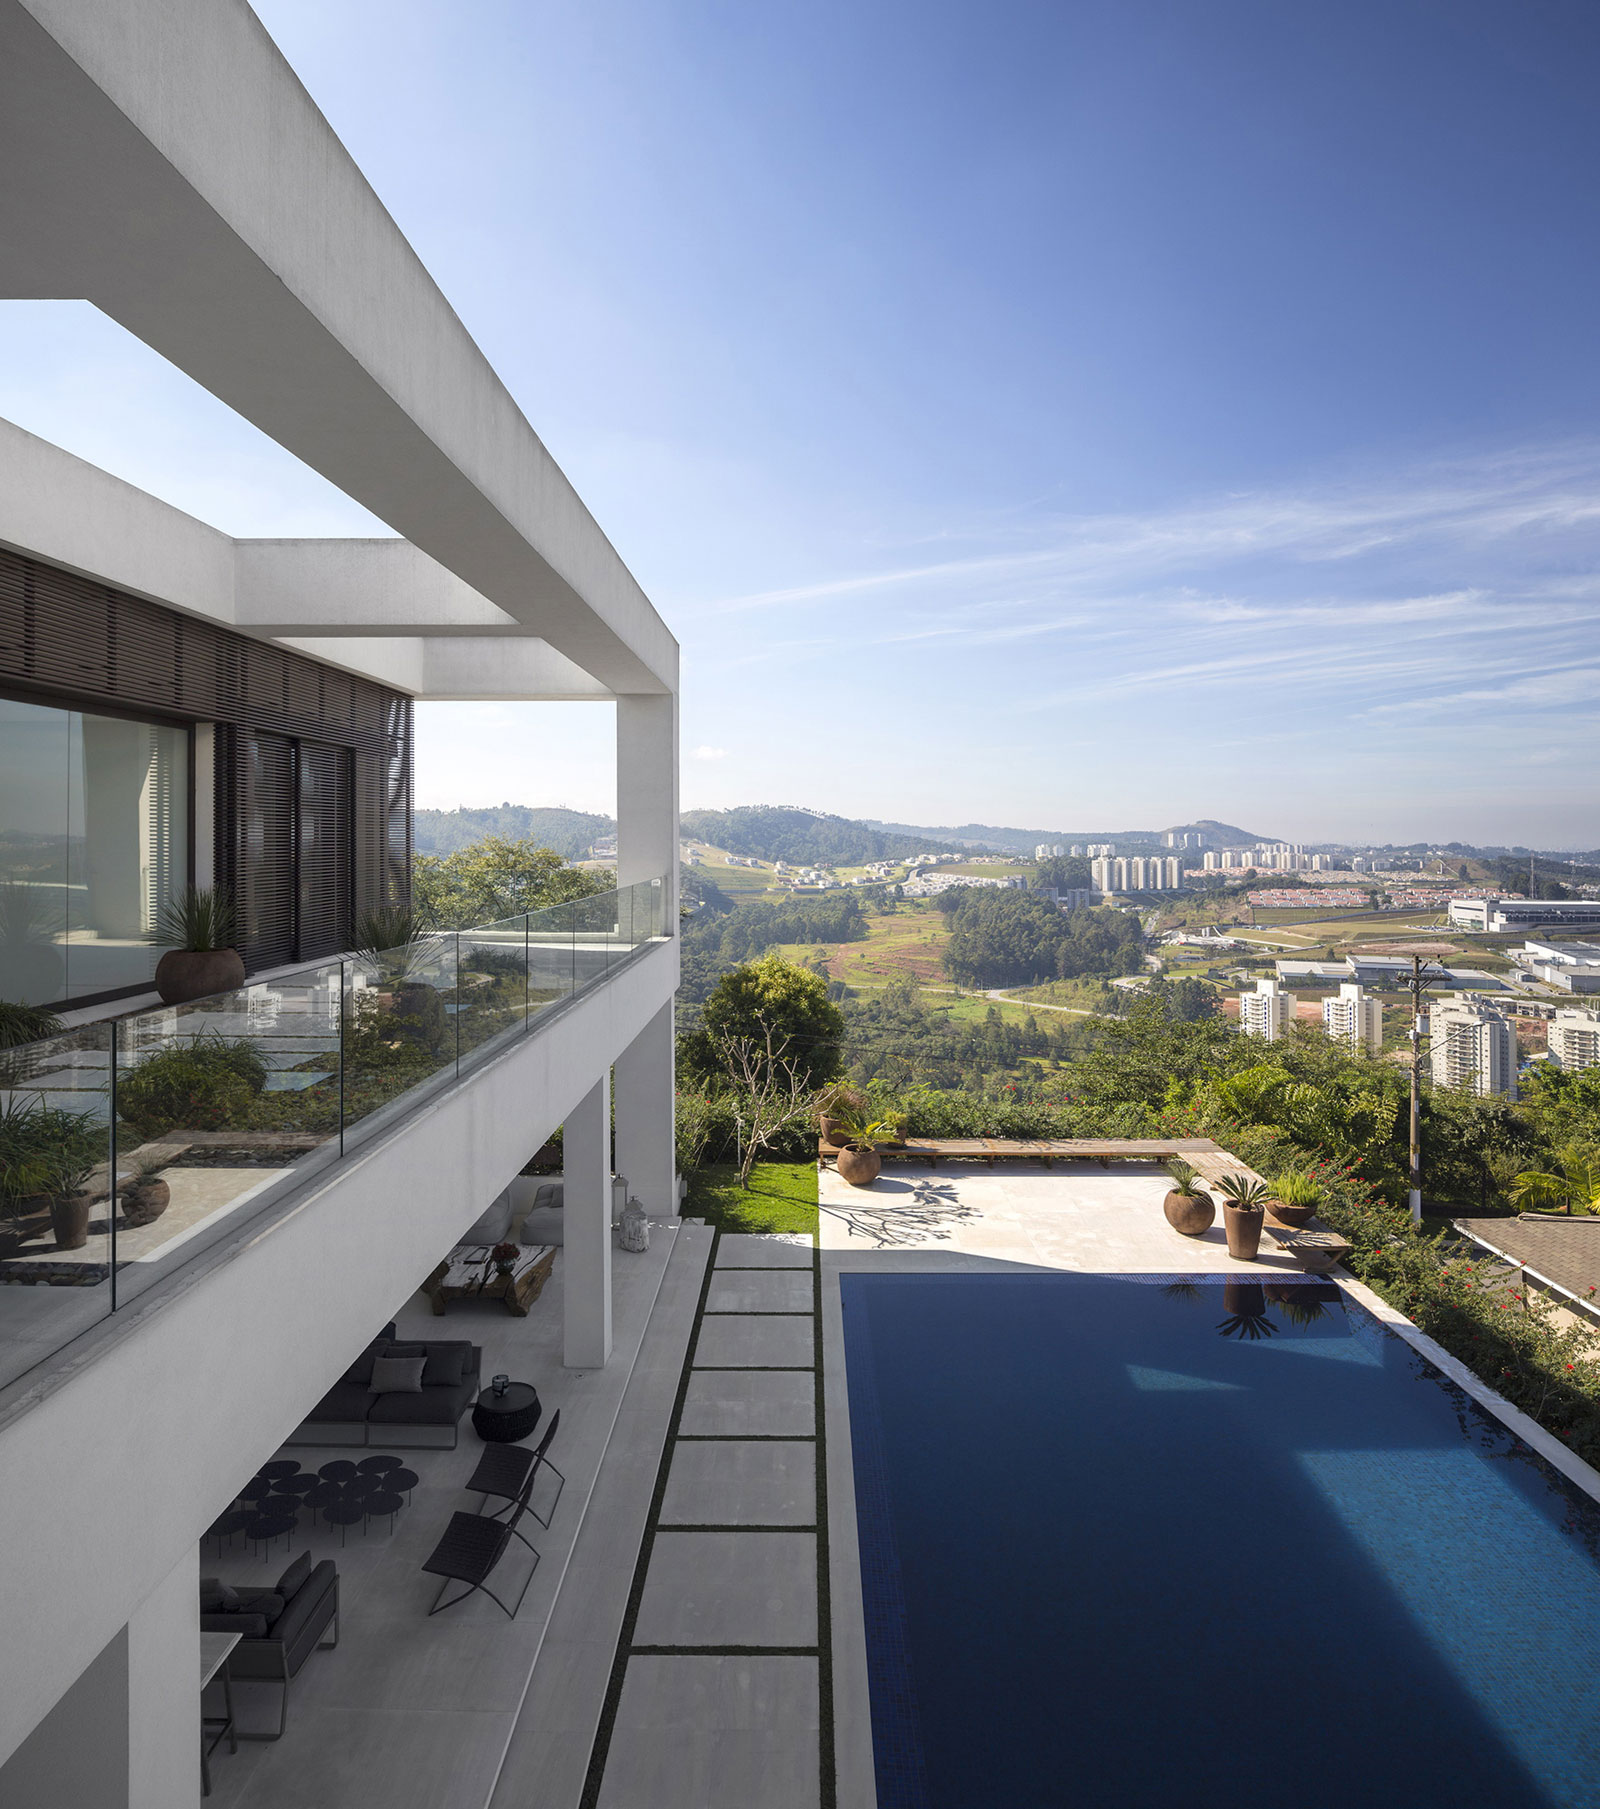 Проект дома с бассейном: фешенебельный трёхэтажный особняк в бразилии